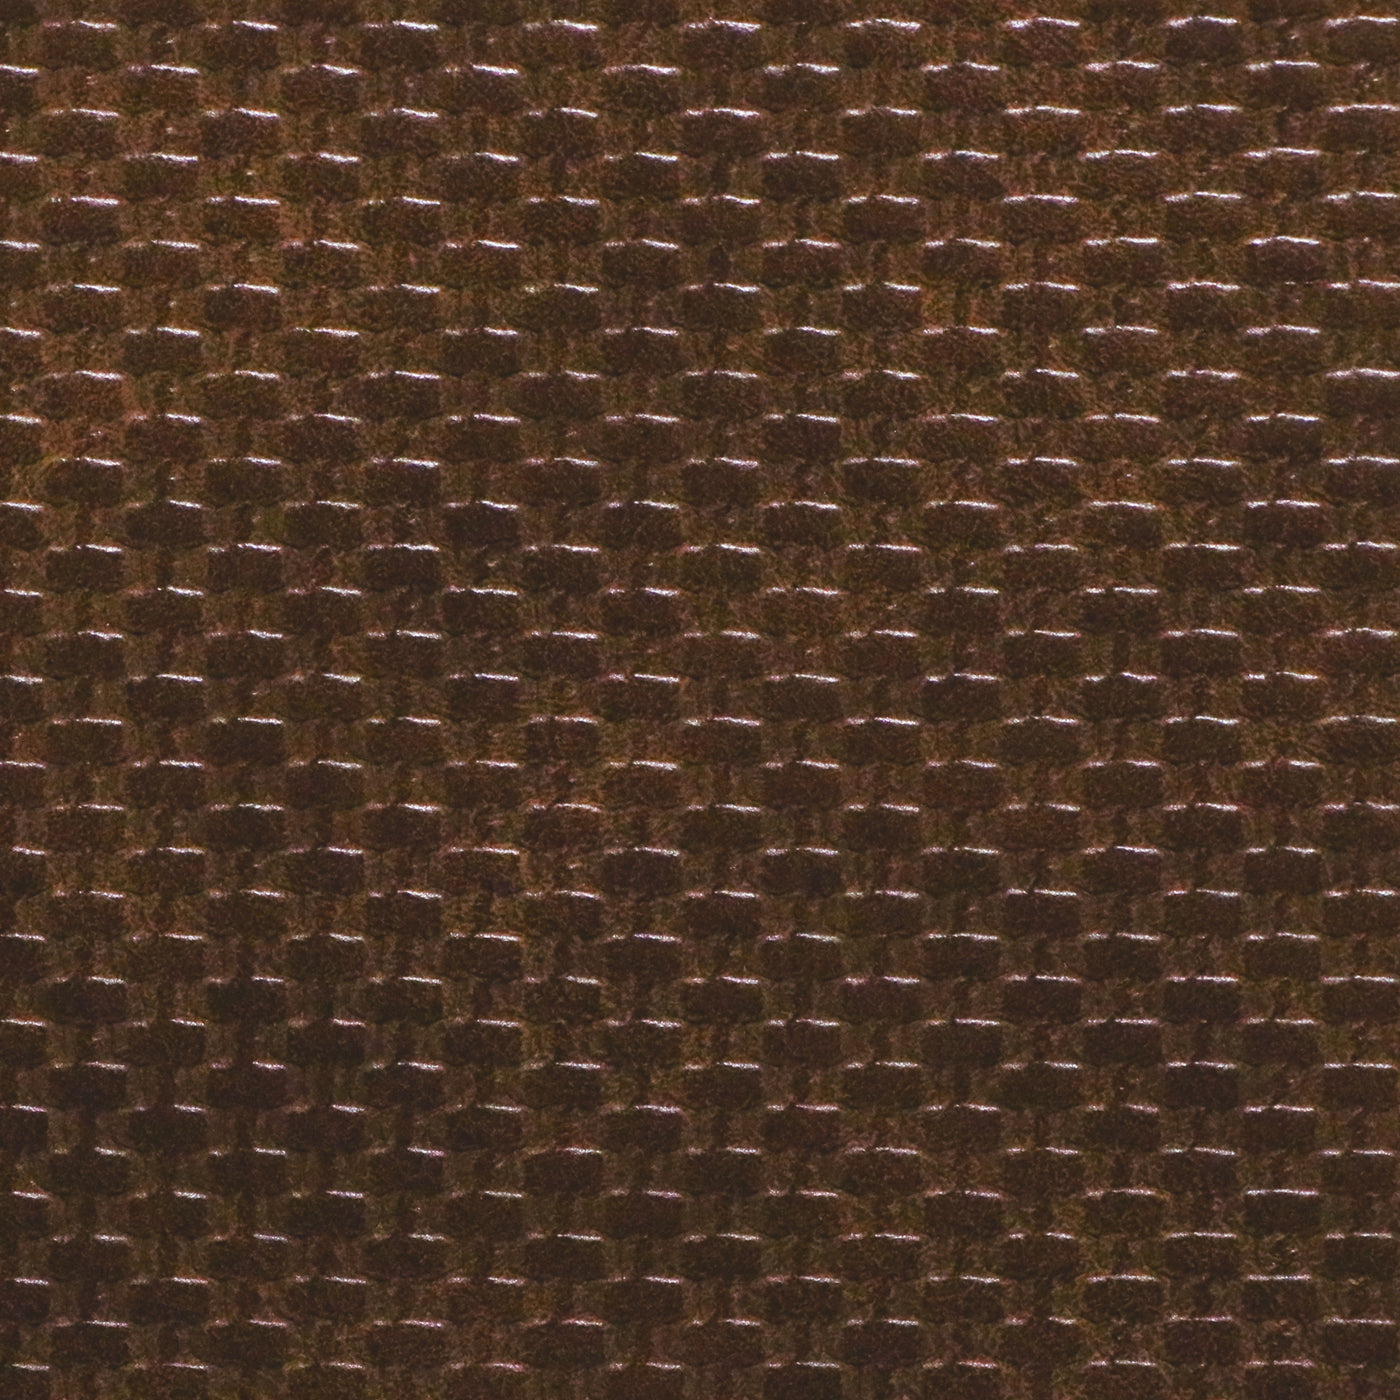 Corte empaquetado de 1/2 yarda: cuero sintético tejido marrón